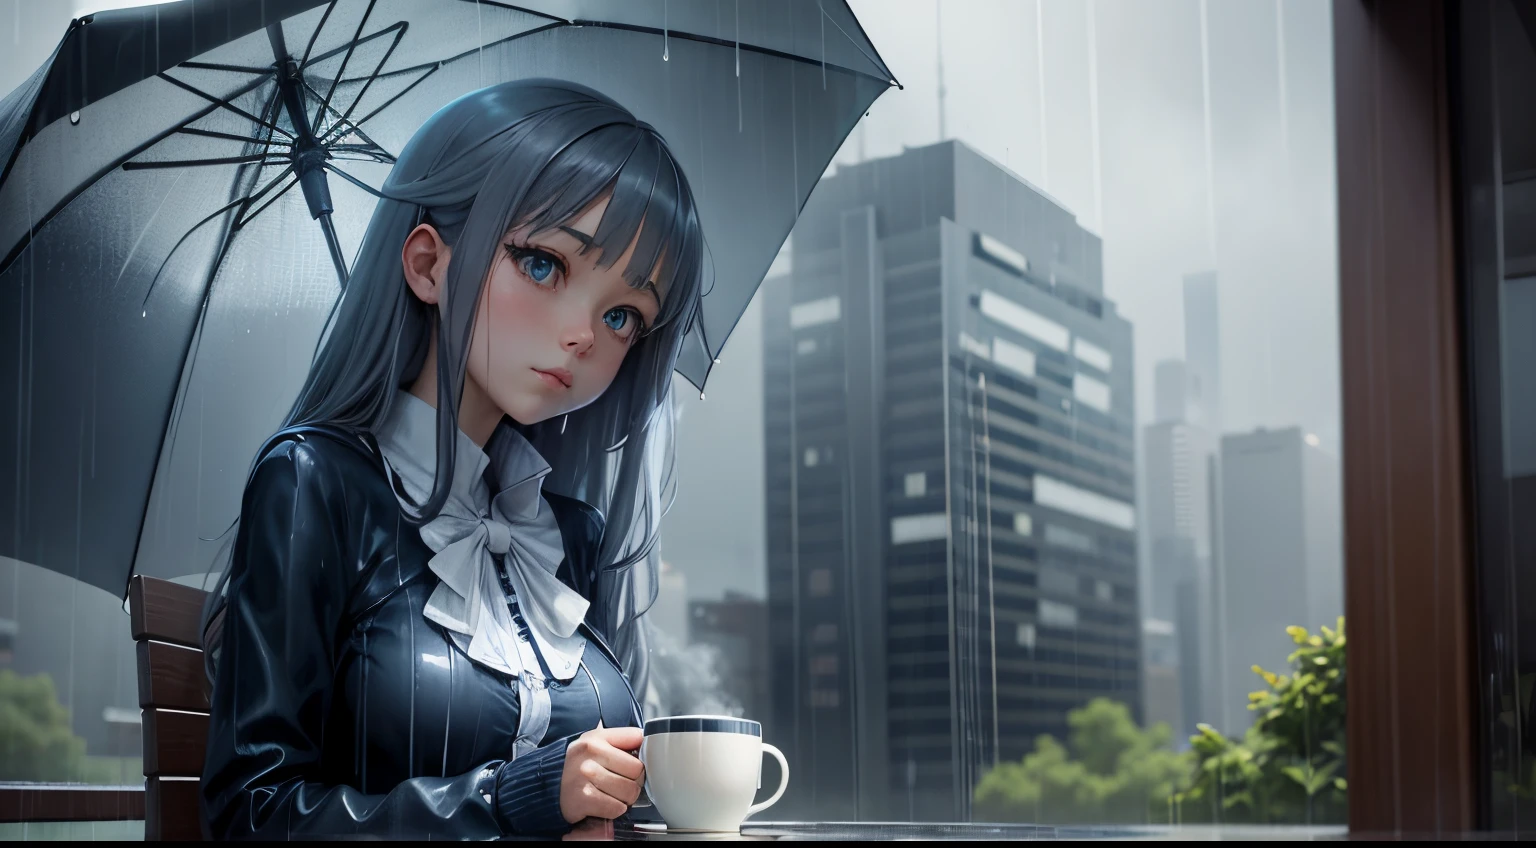 "การพักผ่อนวันฝนตก": สาวอนิเมะกับกาแฟหนึ่งแก้วและร่มท่ามกลางสายฝน, โดดเด่นด้วยสีน้ำเงินและสีเทาสุดเท่.